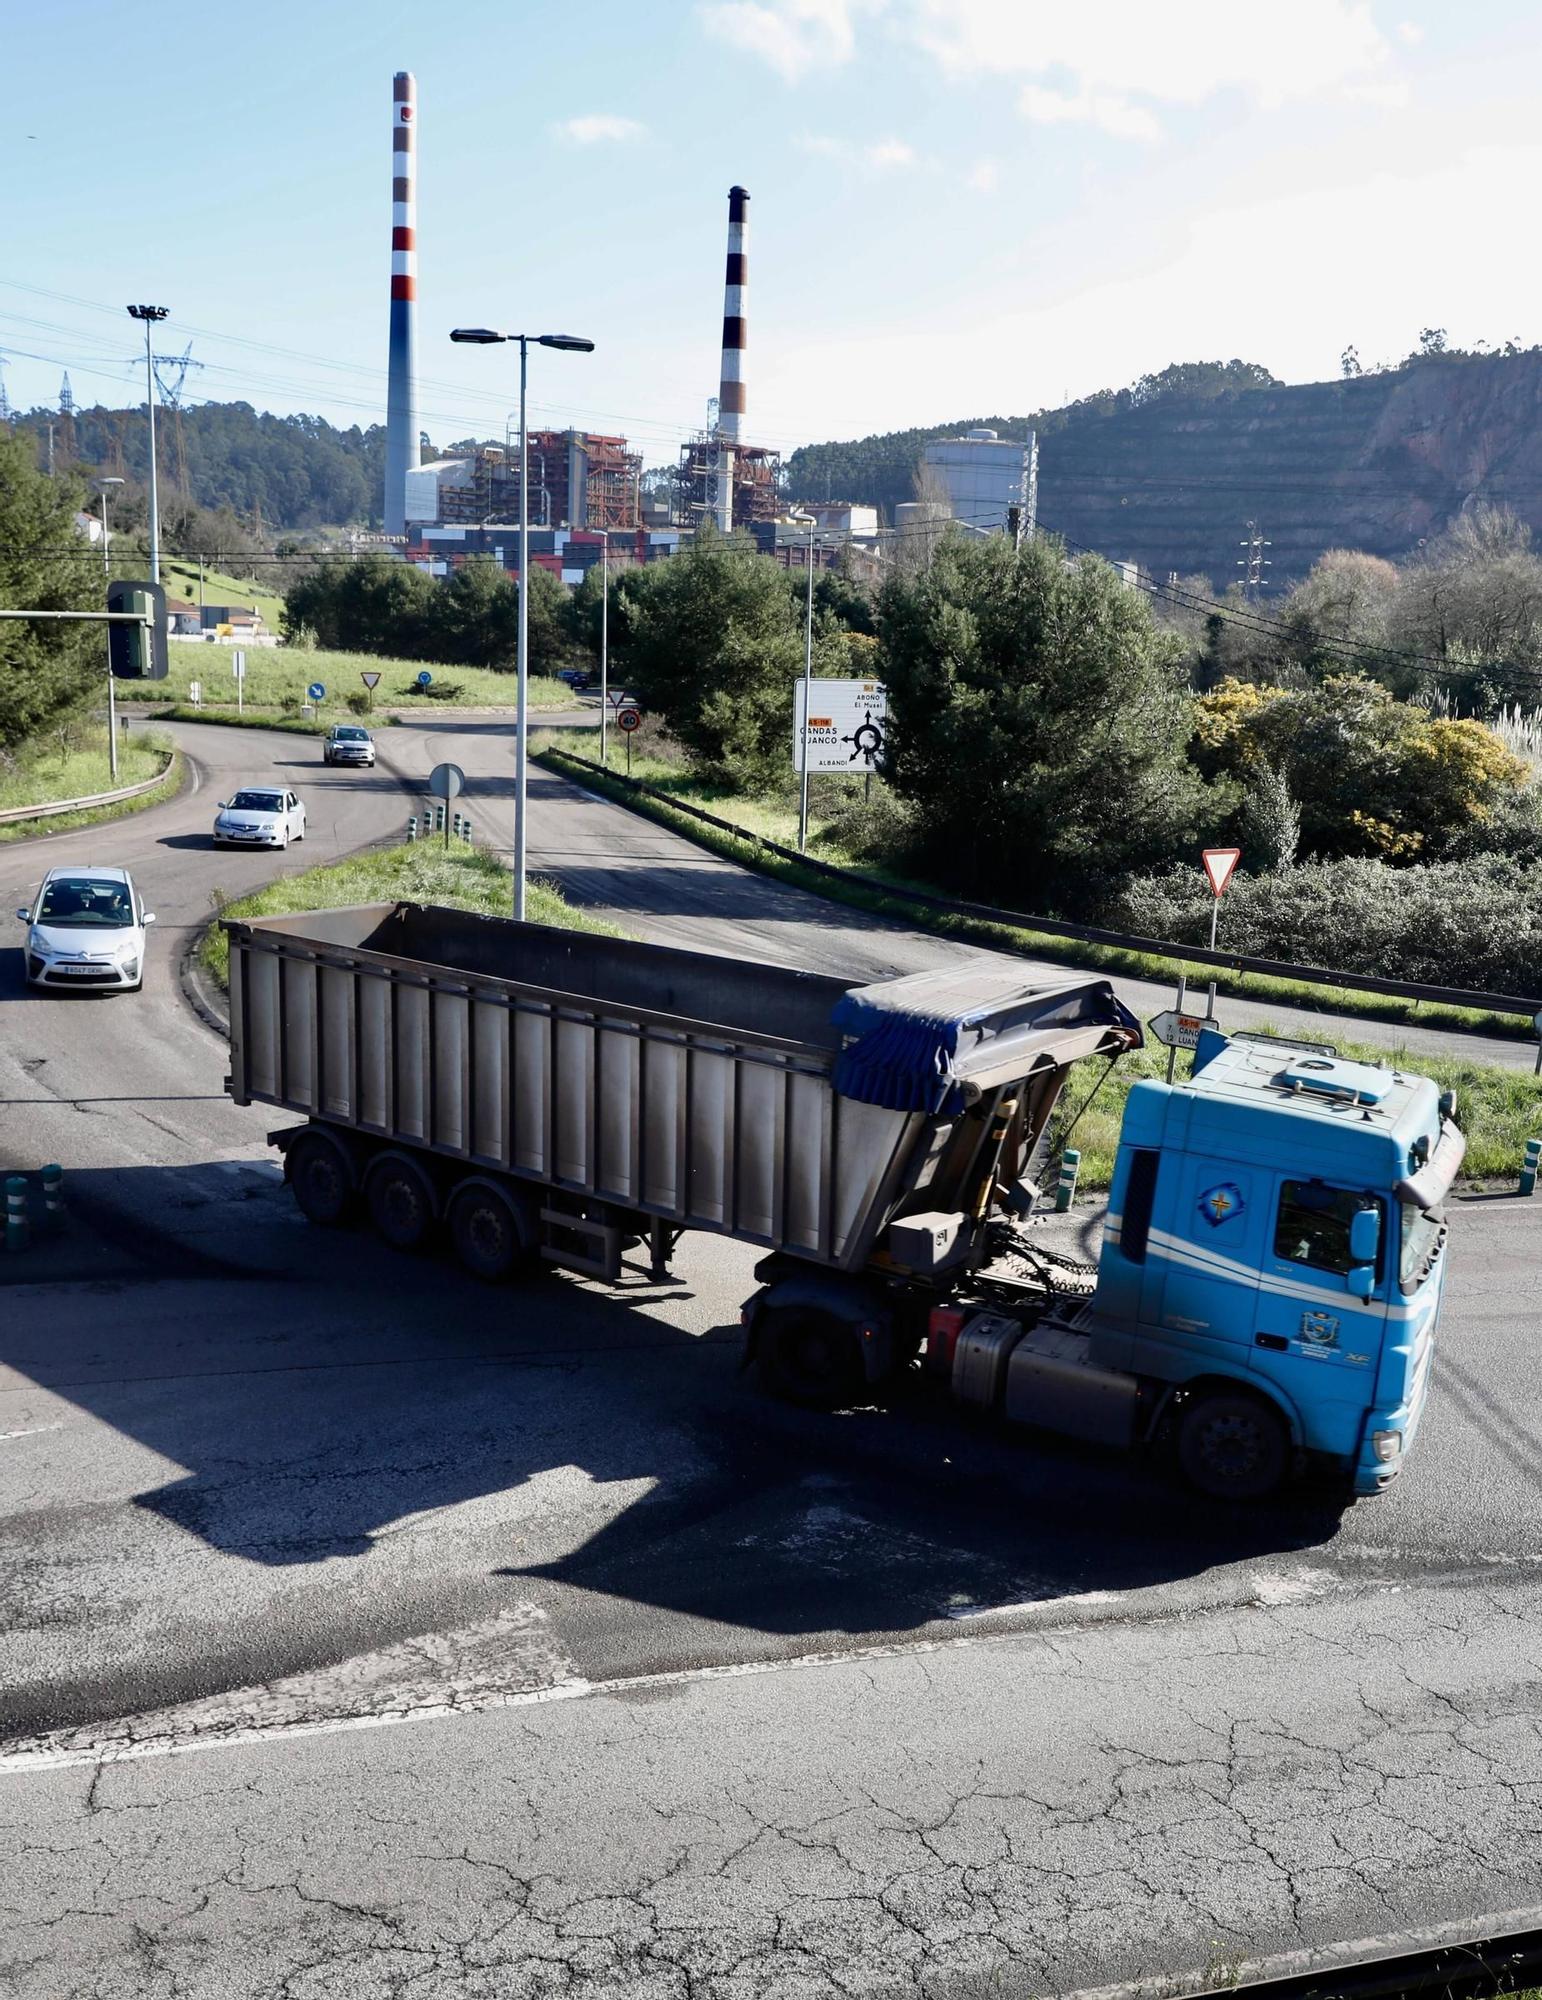 Aplausos y enfado en las dos bocas del túnel de Aboño: así ven en Gijón y Carreño el plan para sacar los camiones de La Calzada (en imágenes)